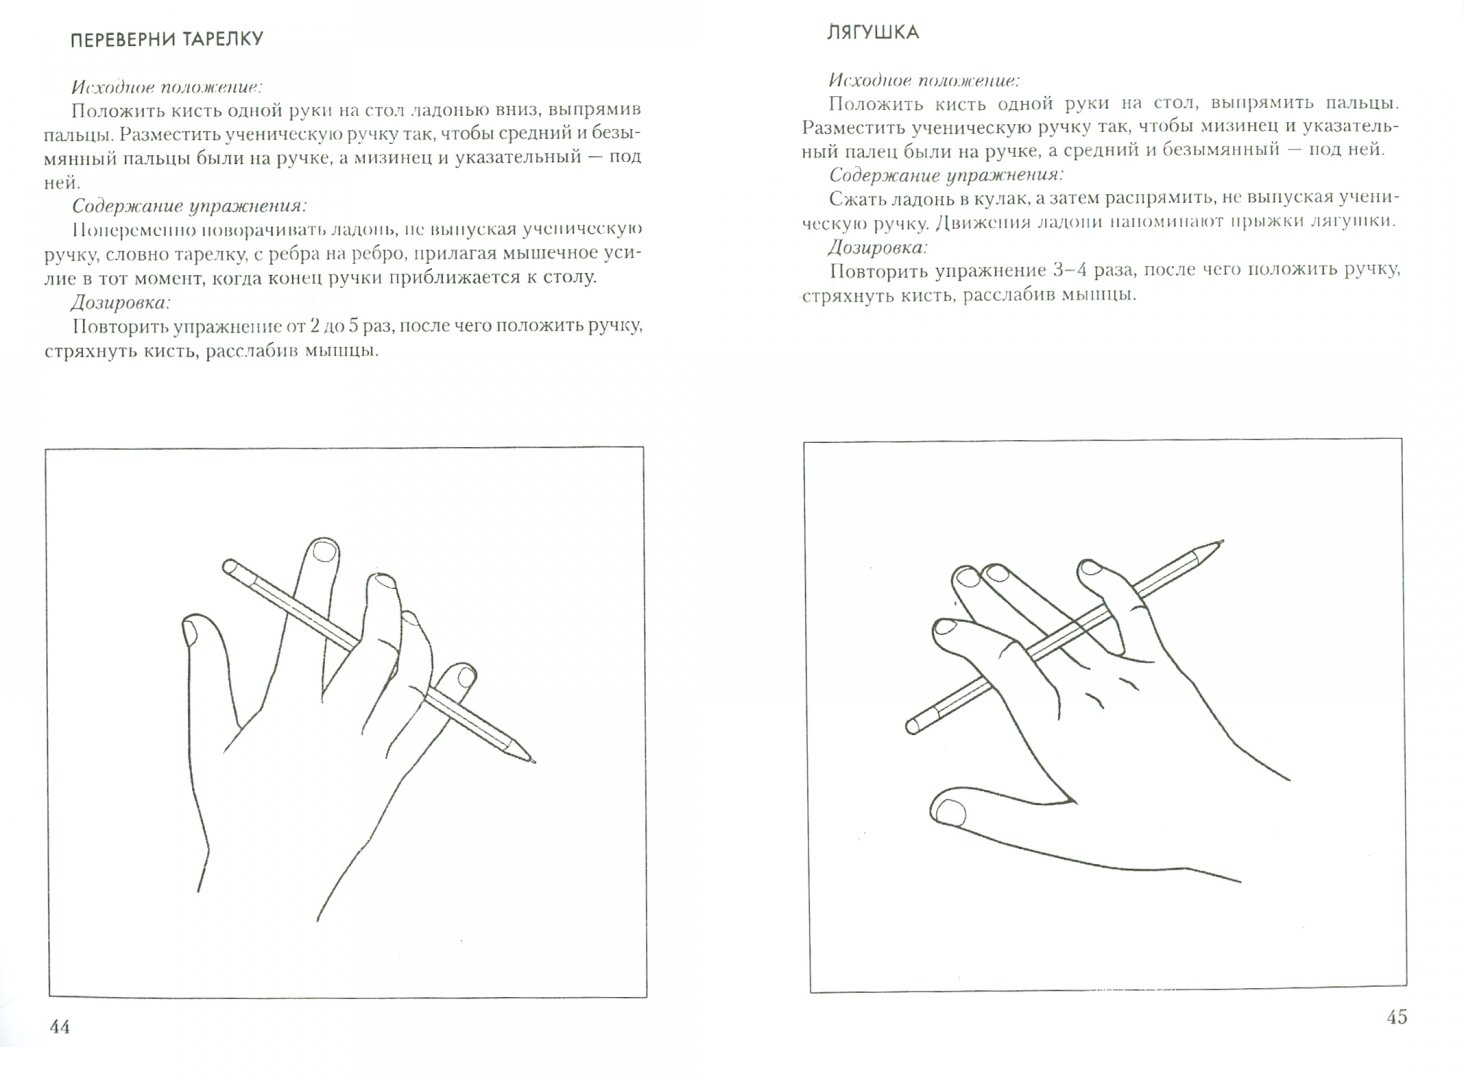 Мелкая моторика кисти. Упражнения для развития моторики пальцев рук у детей. Нейропсихологические упражнения пальчиковые. Нейропсихологические упражнения для развития мелкой моторики. Нейропсихологические упражнения для рук для дошкольников.